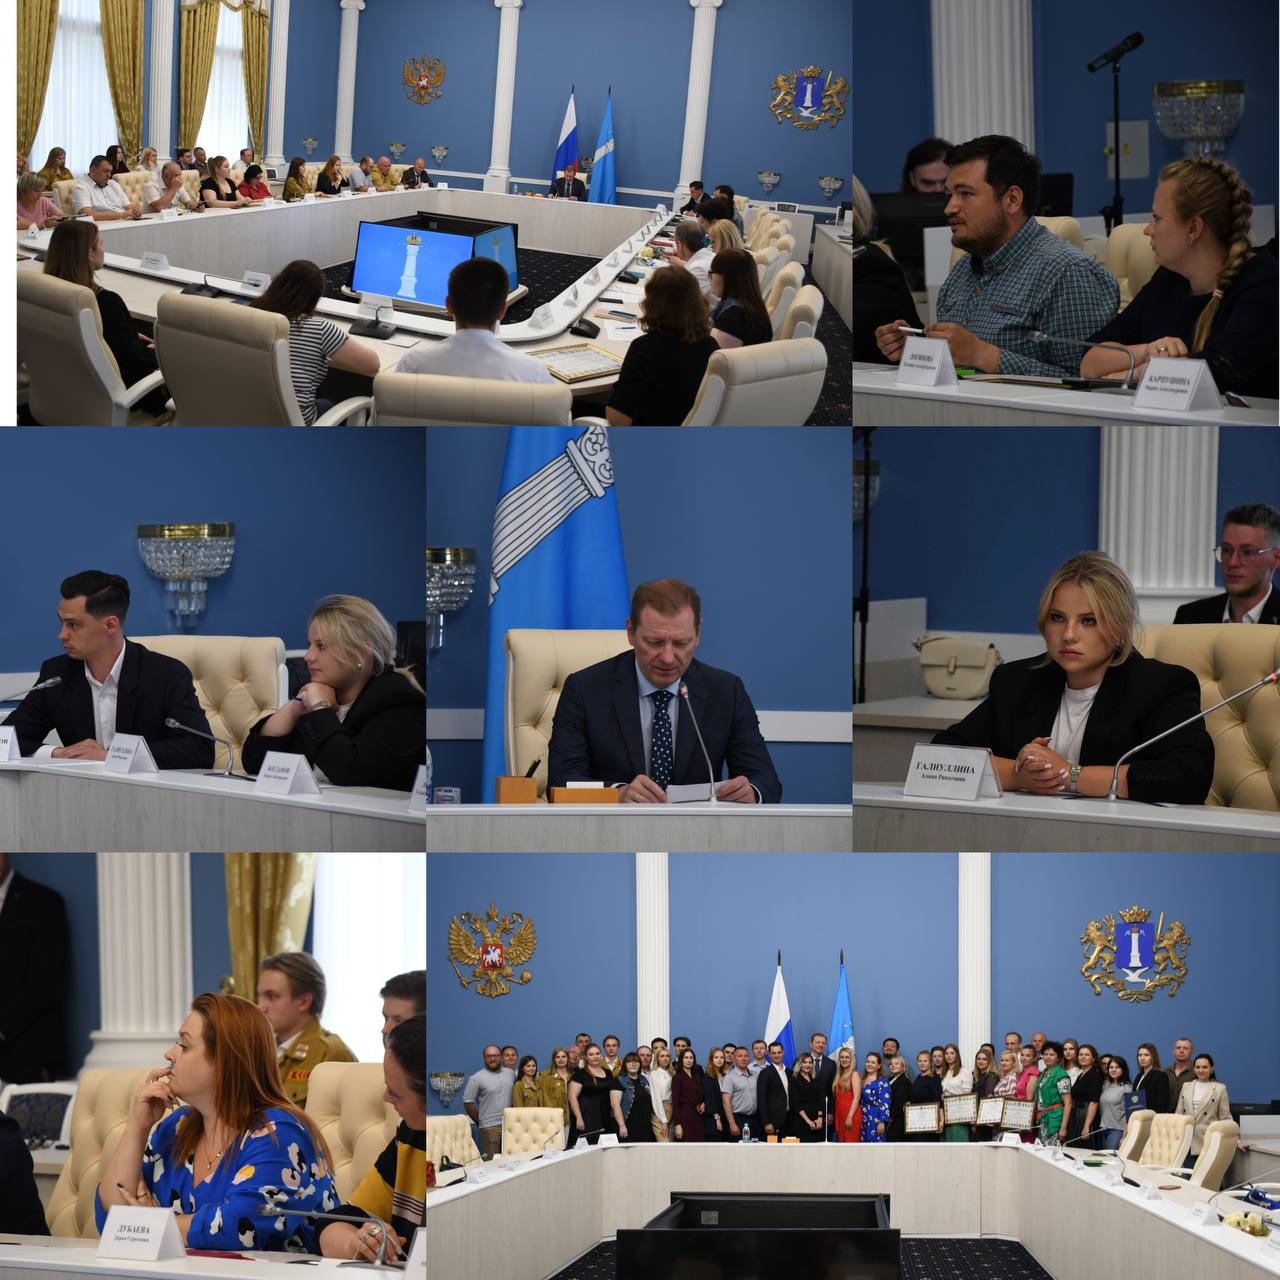 27 июня состоялось заседание по вопросам добровольчества (волонтёрства) на территории Ульяновской области.